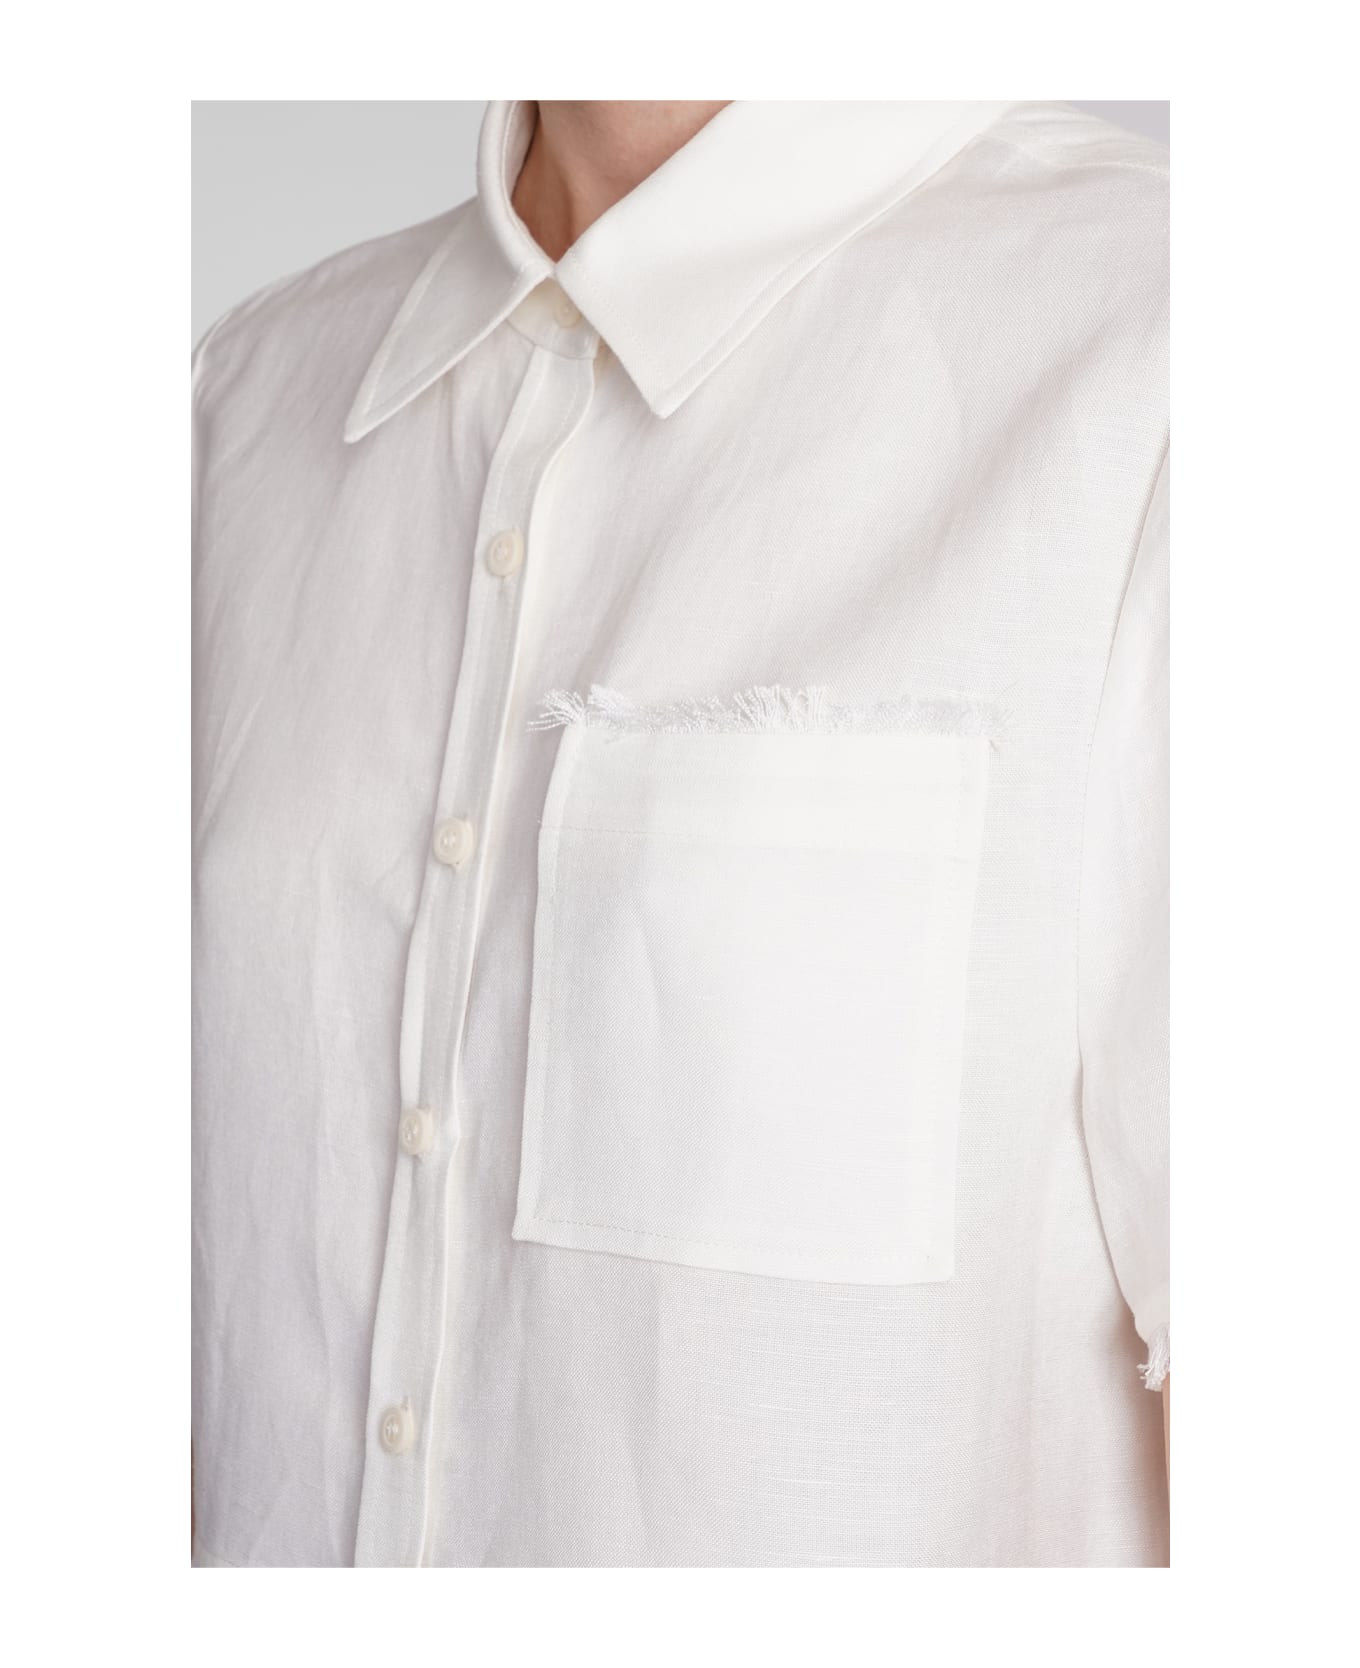 Simkhai Solange Shirt In White Linen - white